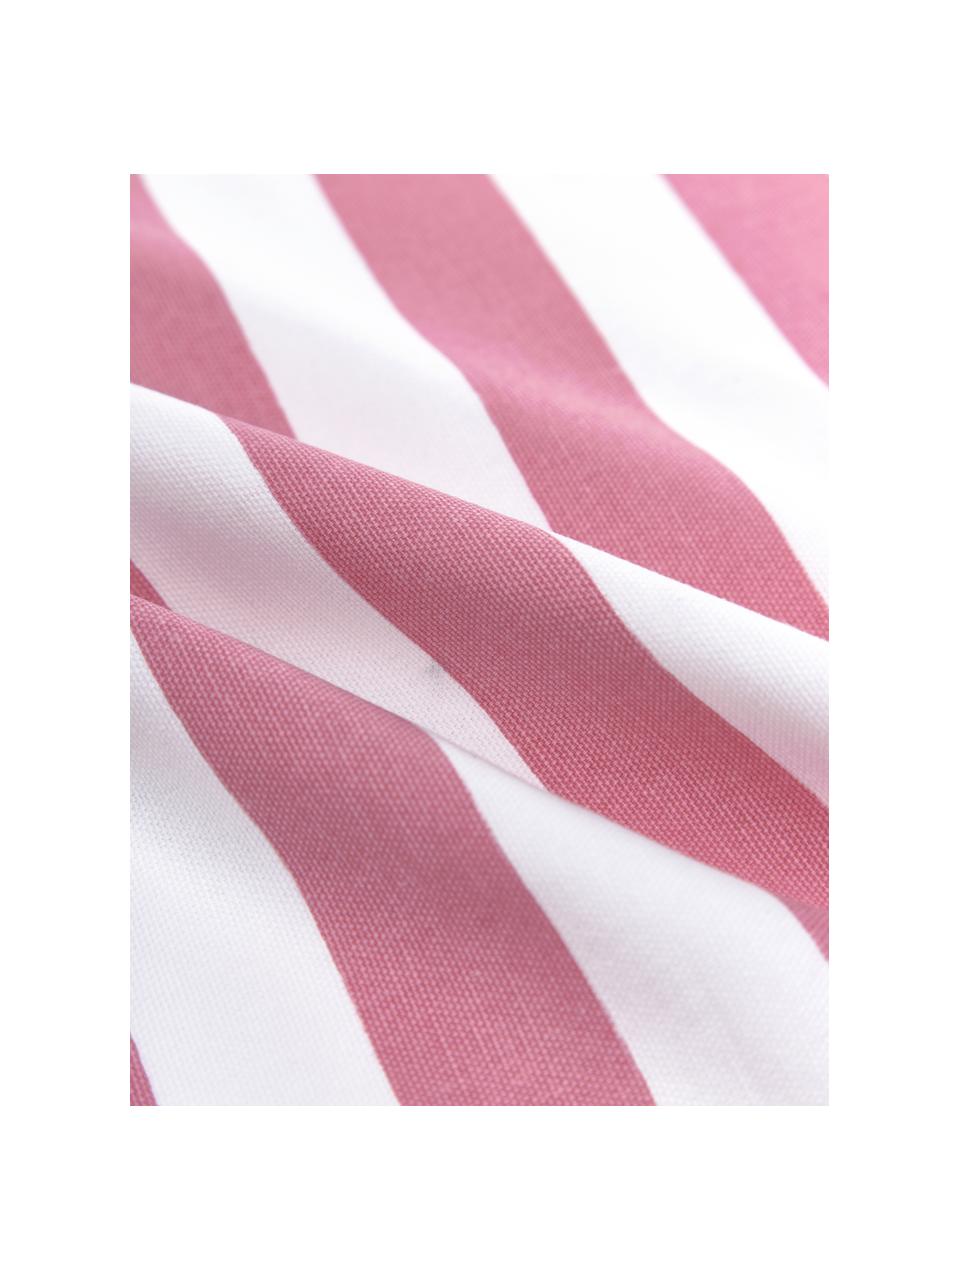 Gestreifte Kissenhülle Timon, 100% Baumwolle, Pink, Weiß, B 40 x L 40 cm